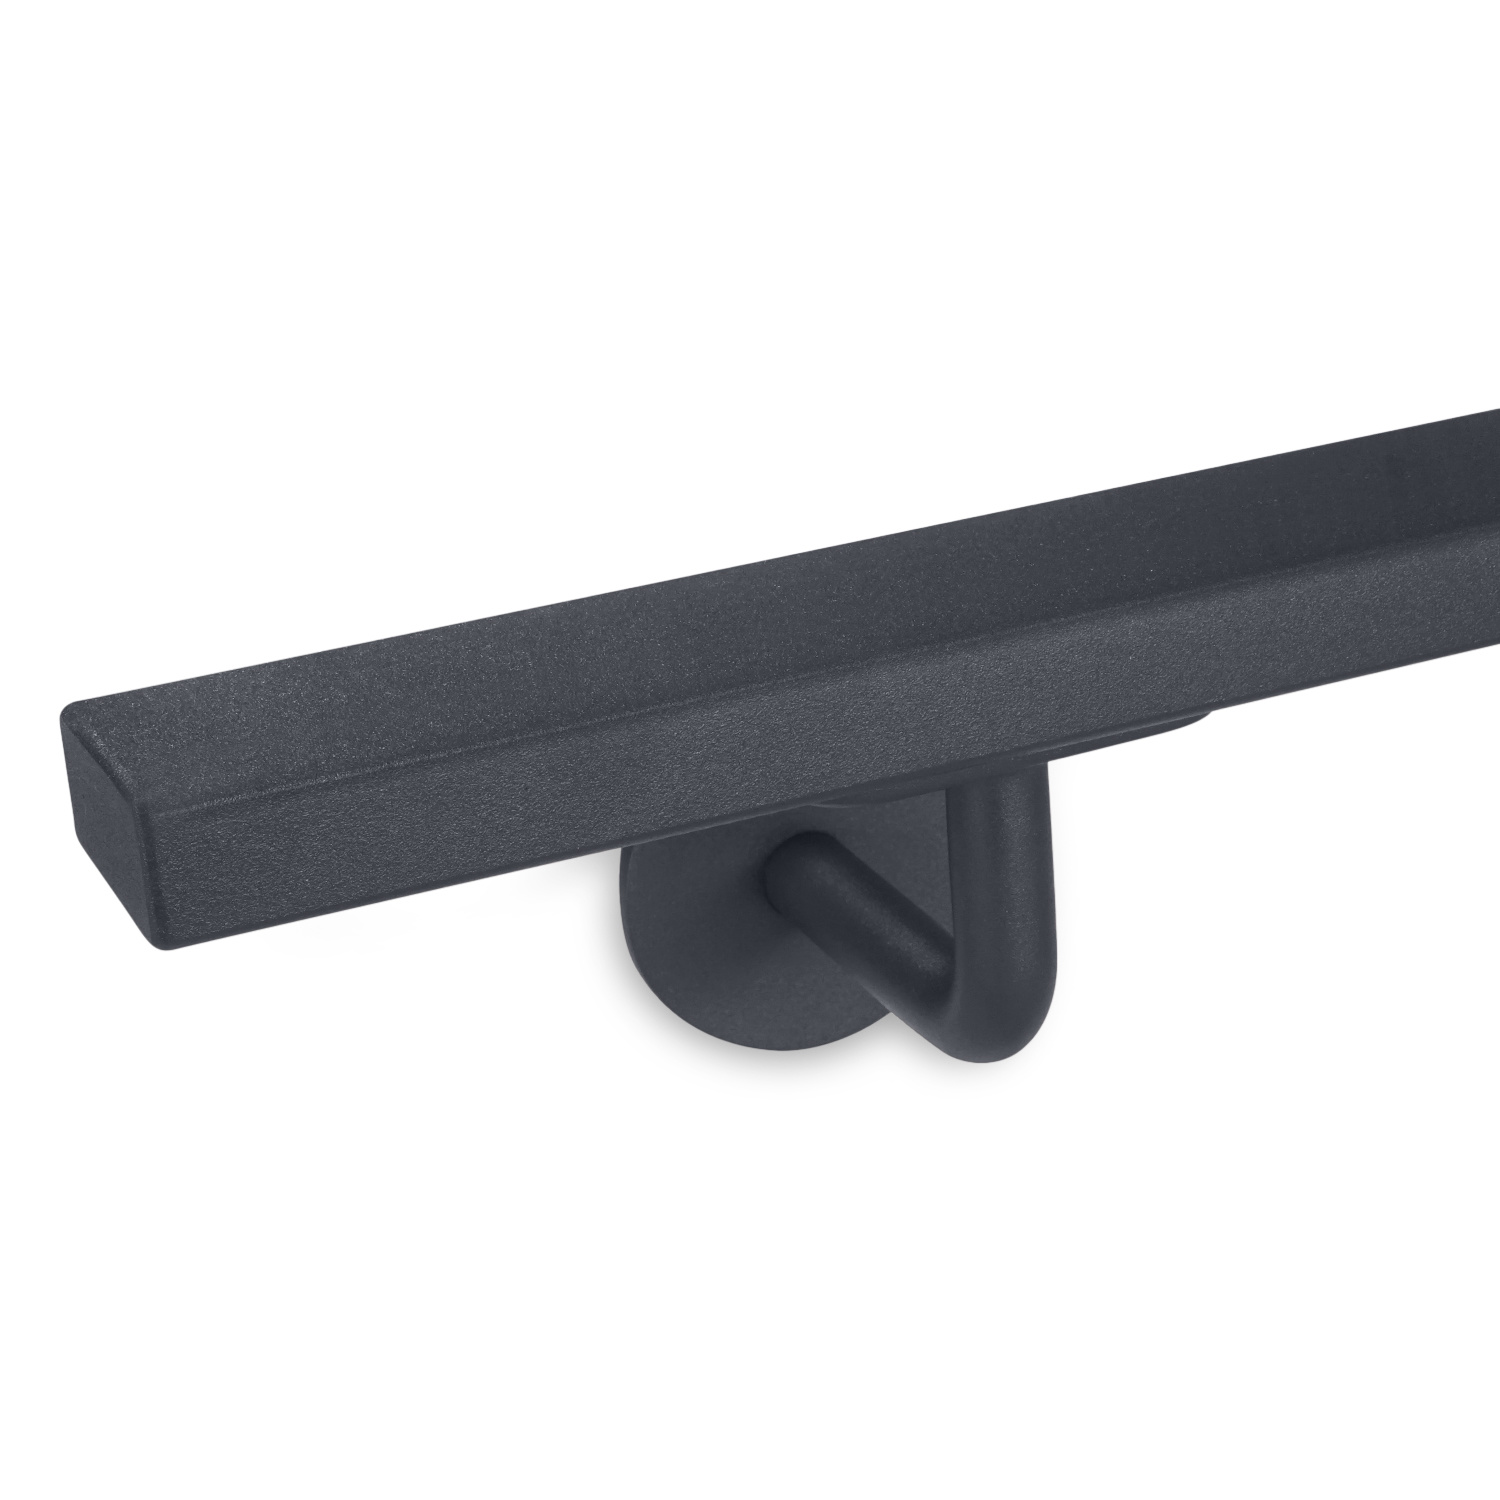  Handlauf anthrazit beschichtet - für Draußen - viereckig 40x20 Modell 3 - Rechteckige Treppengeländer - Treppenhandlauf mit anthrazitgrauer Pulverbeschichtung